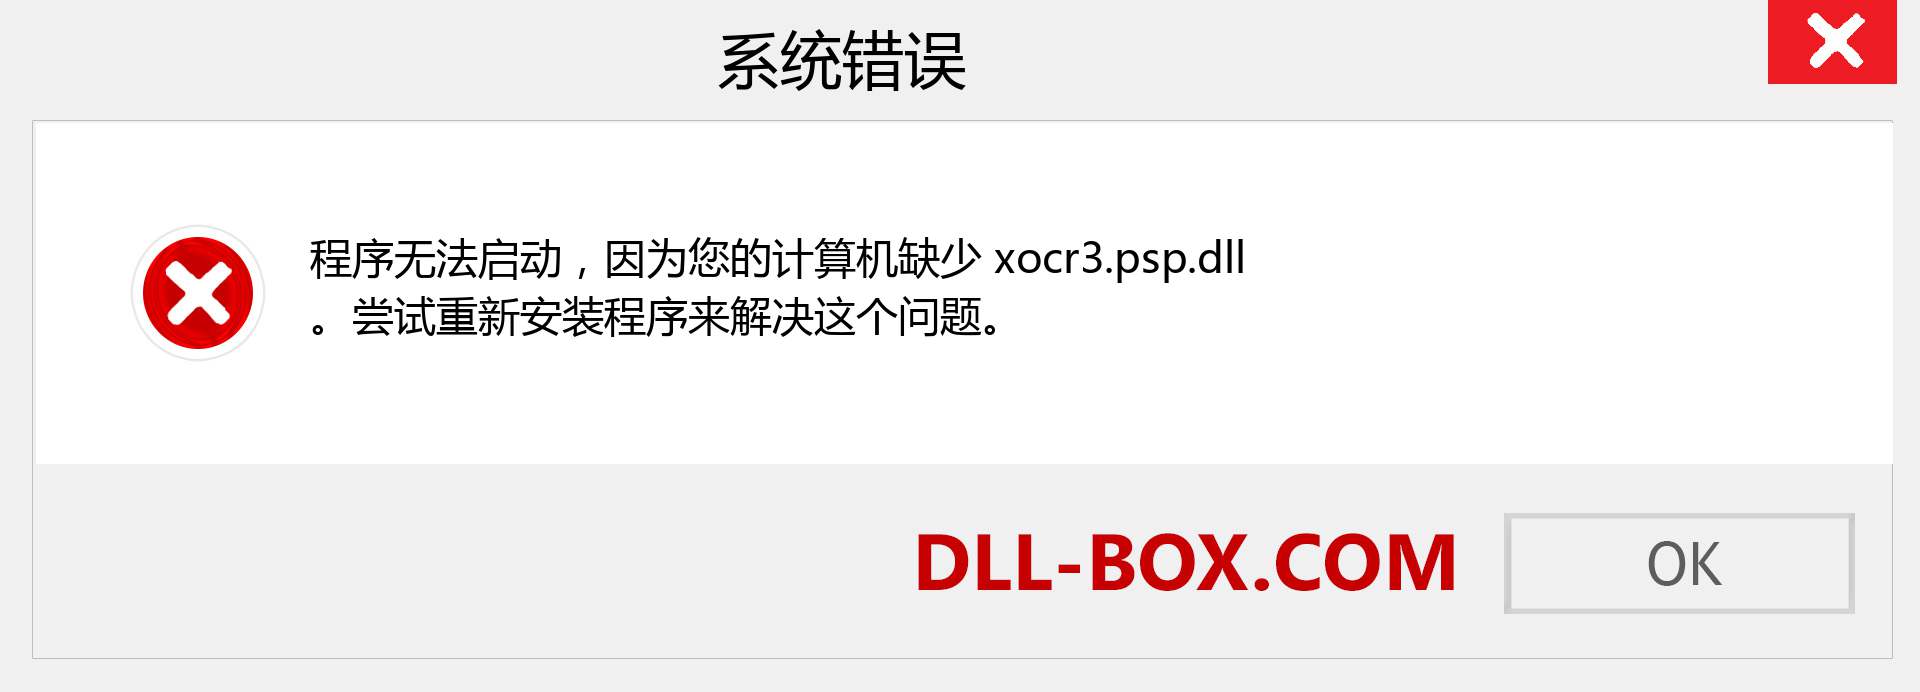 xocr3.psp.dll 文件丢失？。 适用于 Windows 7、8、10 的下载 - 修复 Windows、照片、图像上的 xocr3.psp dll 丢失错误